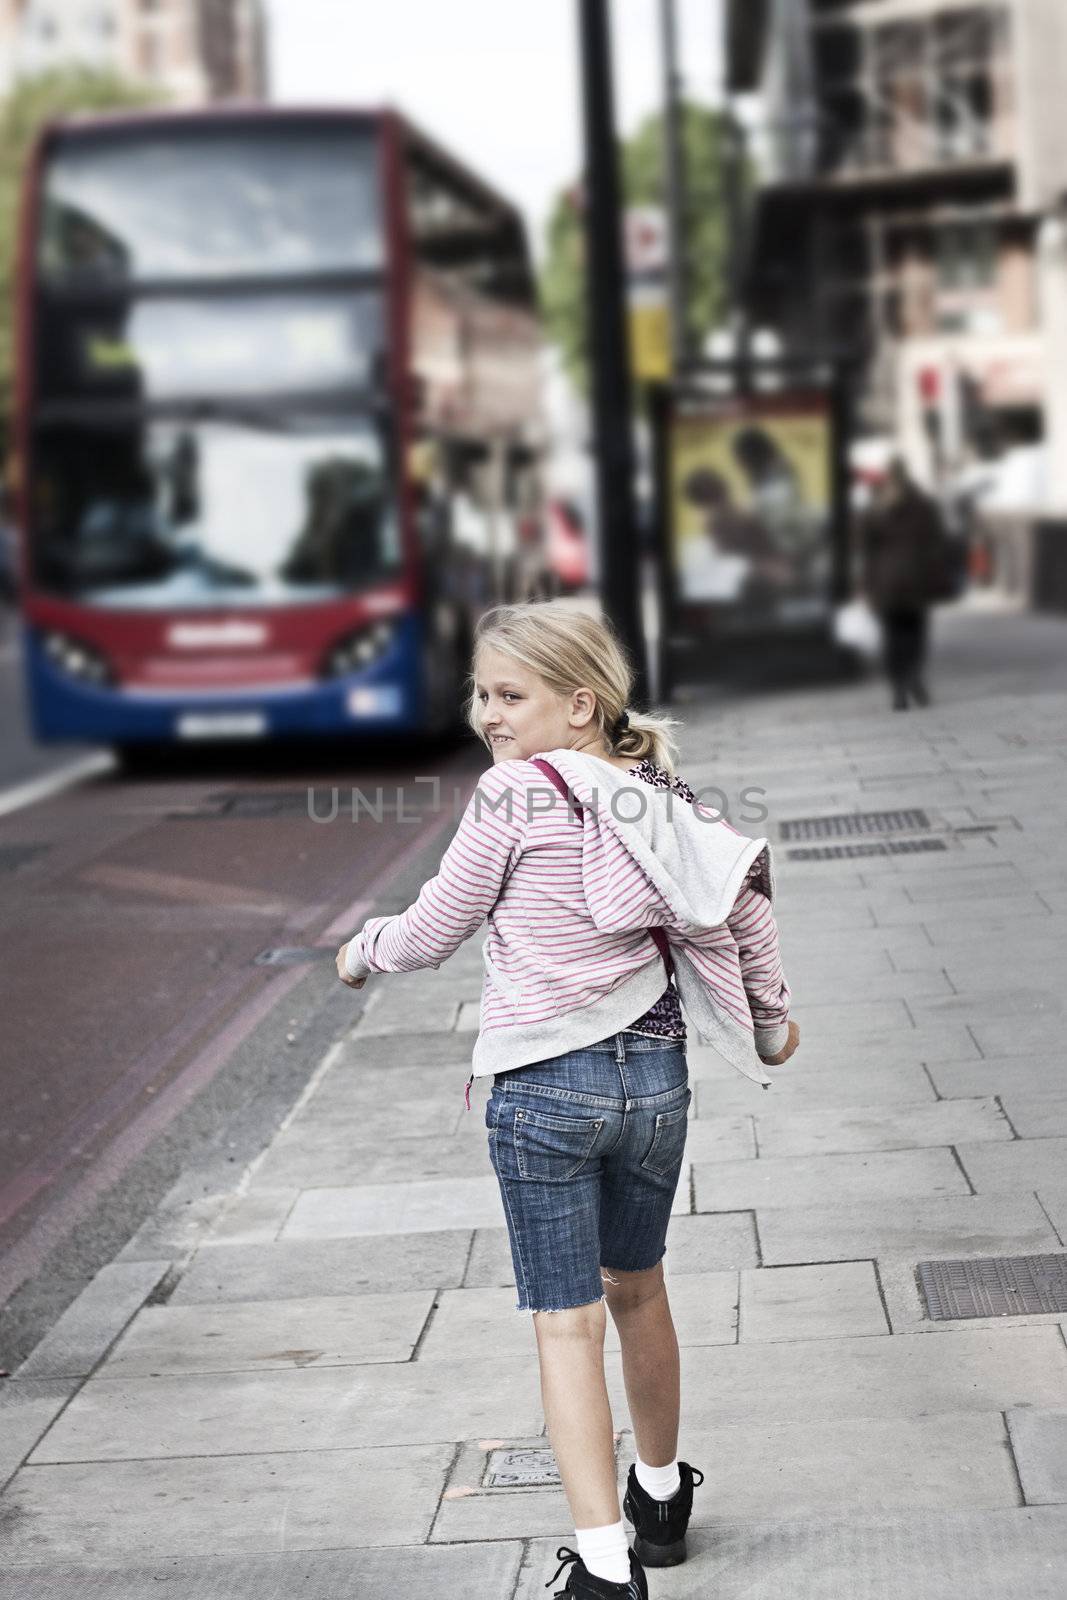 A girl on a street in a city. Grunge feel, short depth of field. Film grain applied